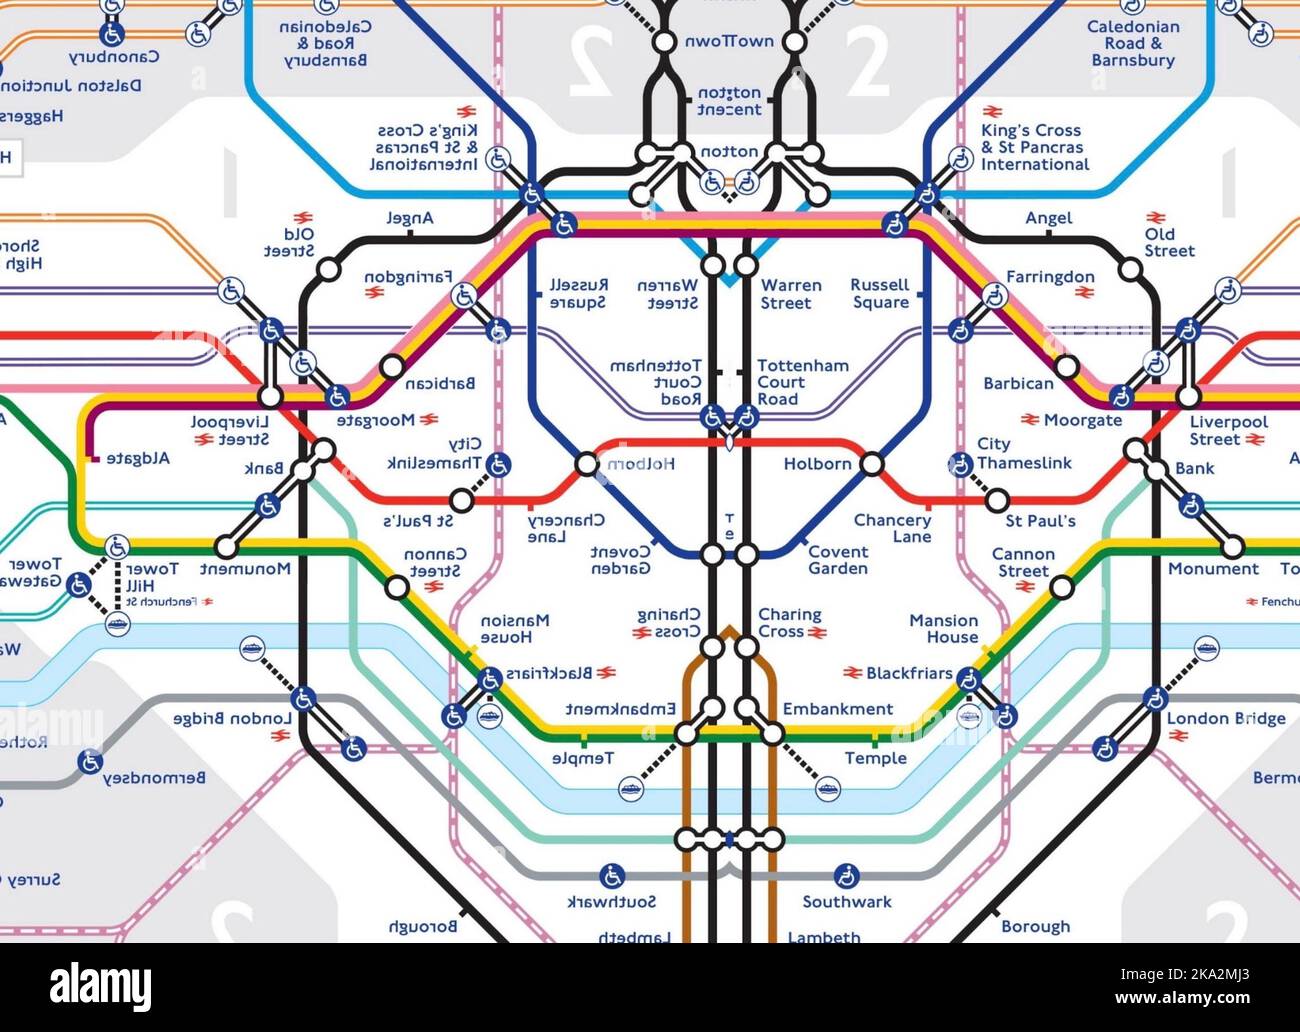 Mappa Della Metropolitana Di Londra Immagini E Fotografie Stock Ad Alta